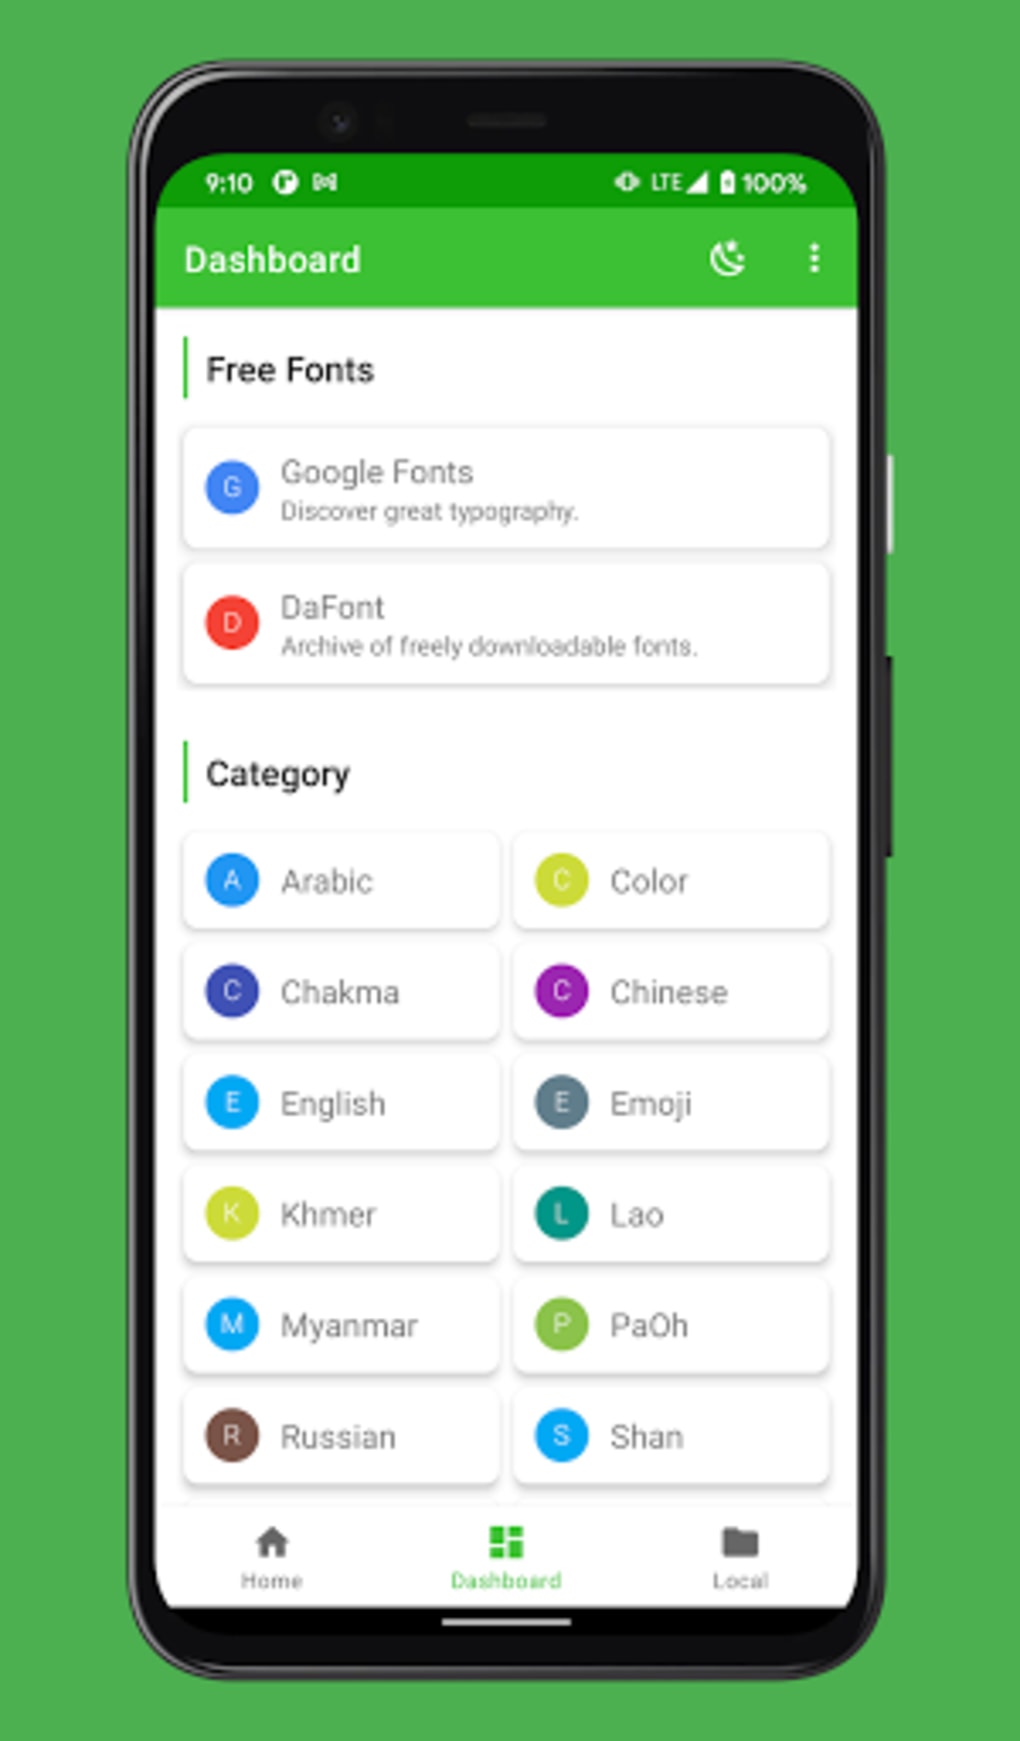 ZFont 3 APK Android là công cụ tuyệt vời để bạn tùy chỉnh giao diện phông chữ trên điện thoại của mình. Với ZFont 3 APK, bạn có thể tải về hàng nghìn font chữ độc đáo và tùy chỉnh các phông chữ theo ý thích của mình. Hãy truy cập vào hình ảnh để tìm hiểu thêm về ZFont 3 APK và cách sử dụng trên Android.